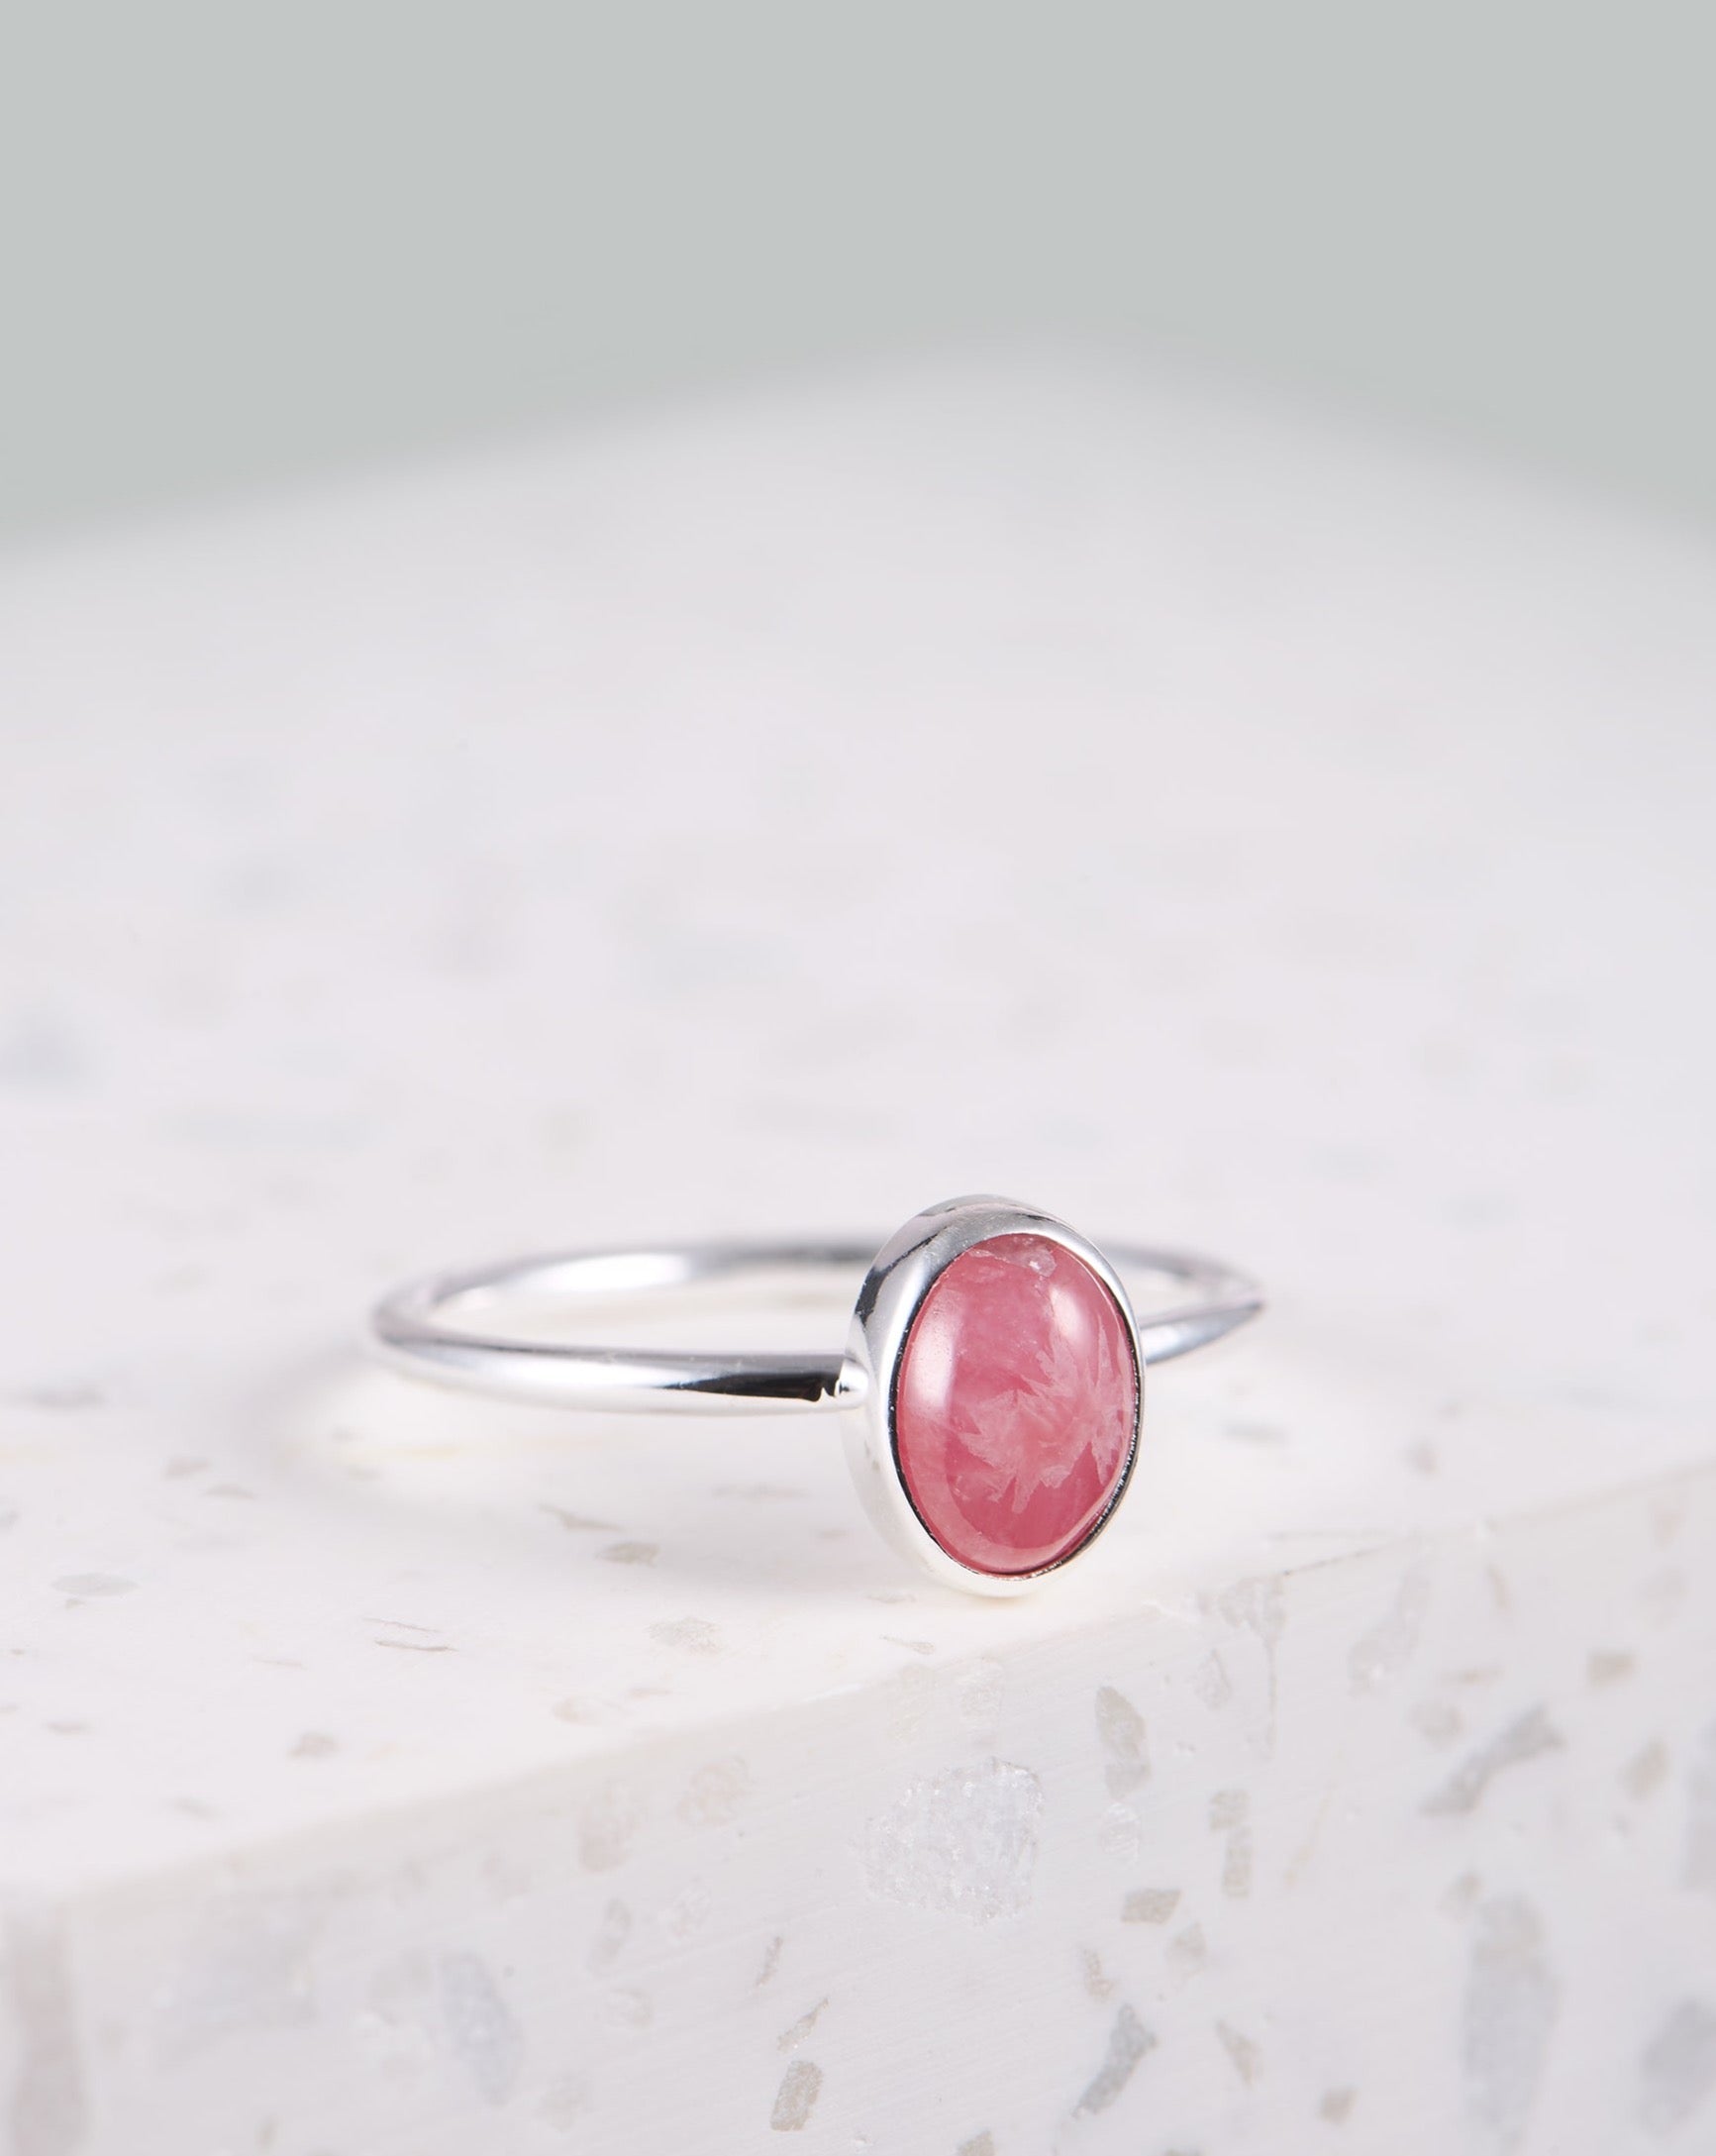 Rhodochrosit Ring | Ring mit rosanem Stein | Handgemachter Schmuck aus Bali | Klassischer Ring mit Stein | Geschenk für Freundin finden | Wasserfester Schmuck